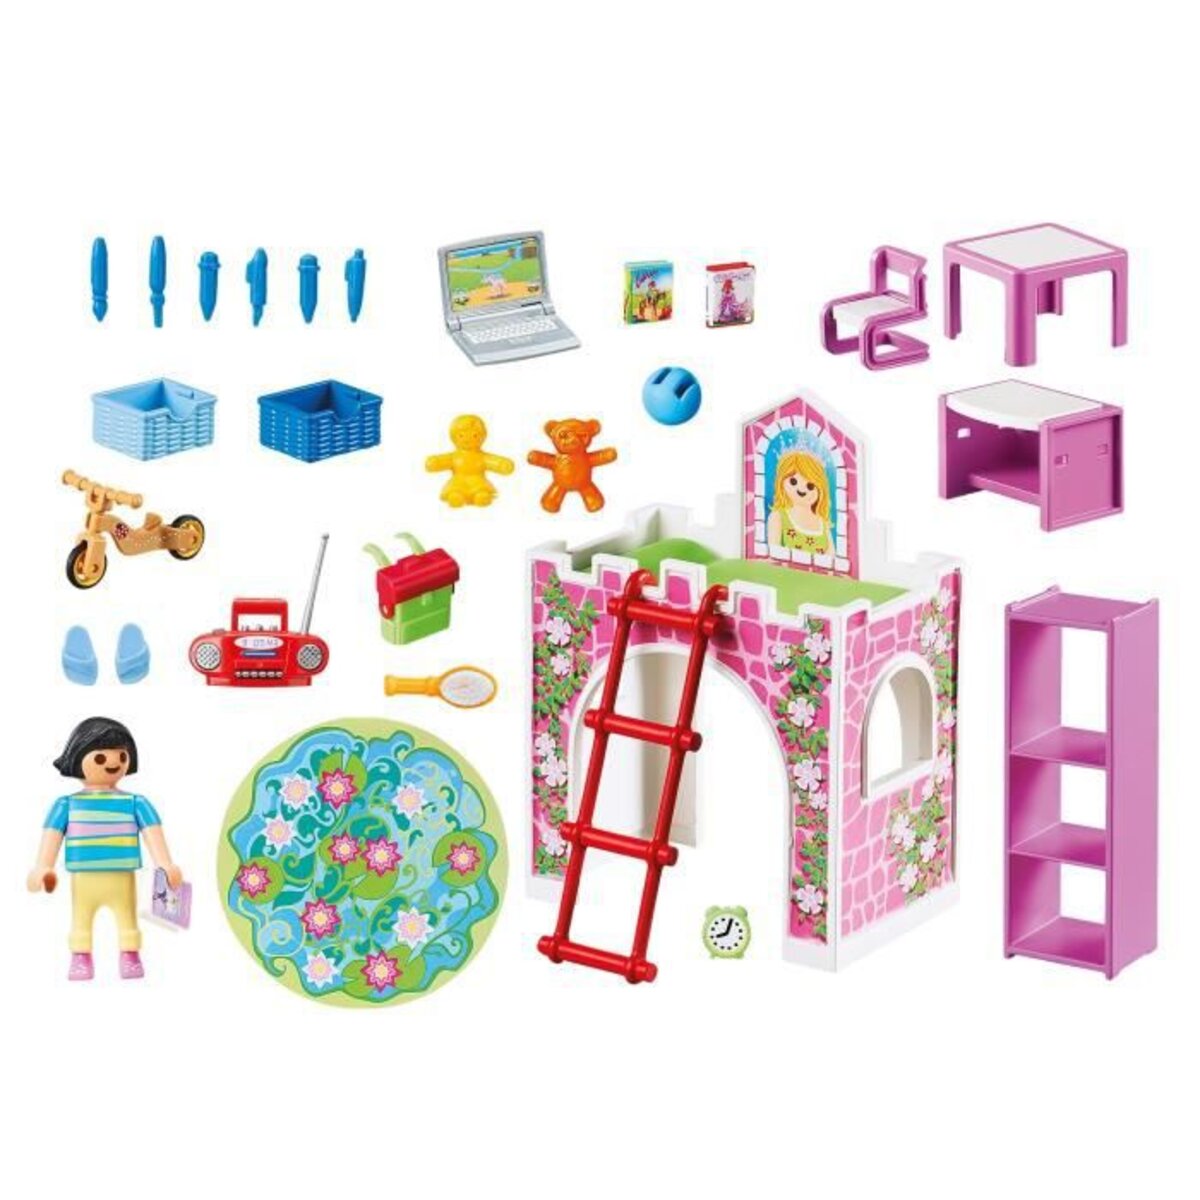 Playmobil Chambre d'Enfant City Life n°9270 - Chambre de Petite Fille